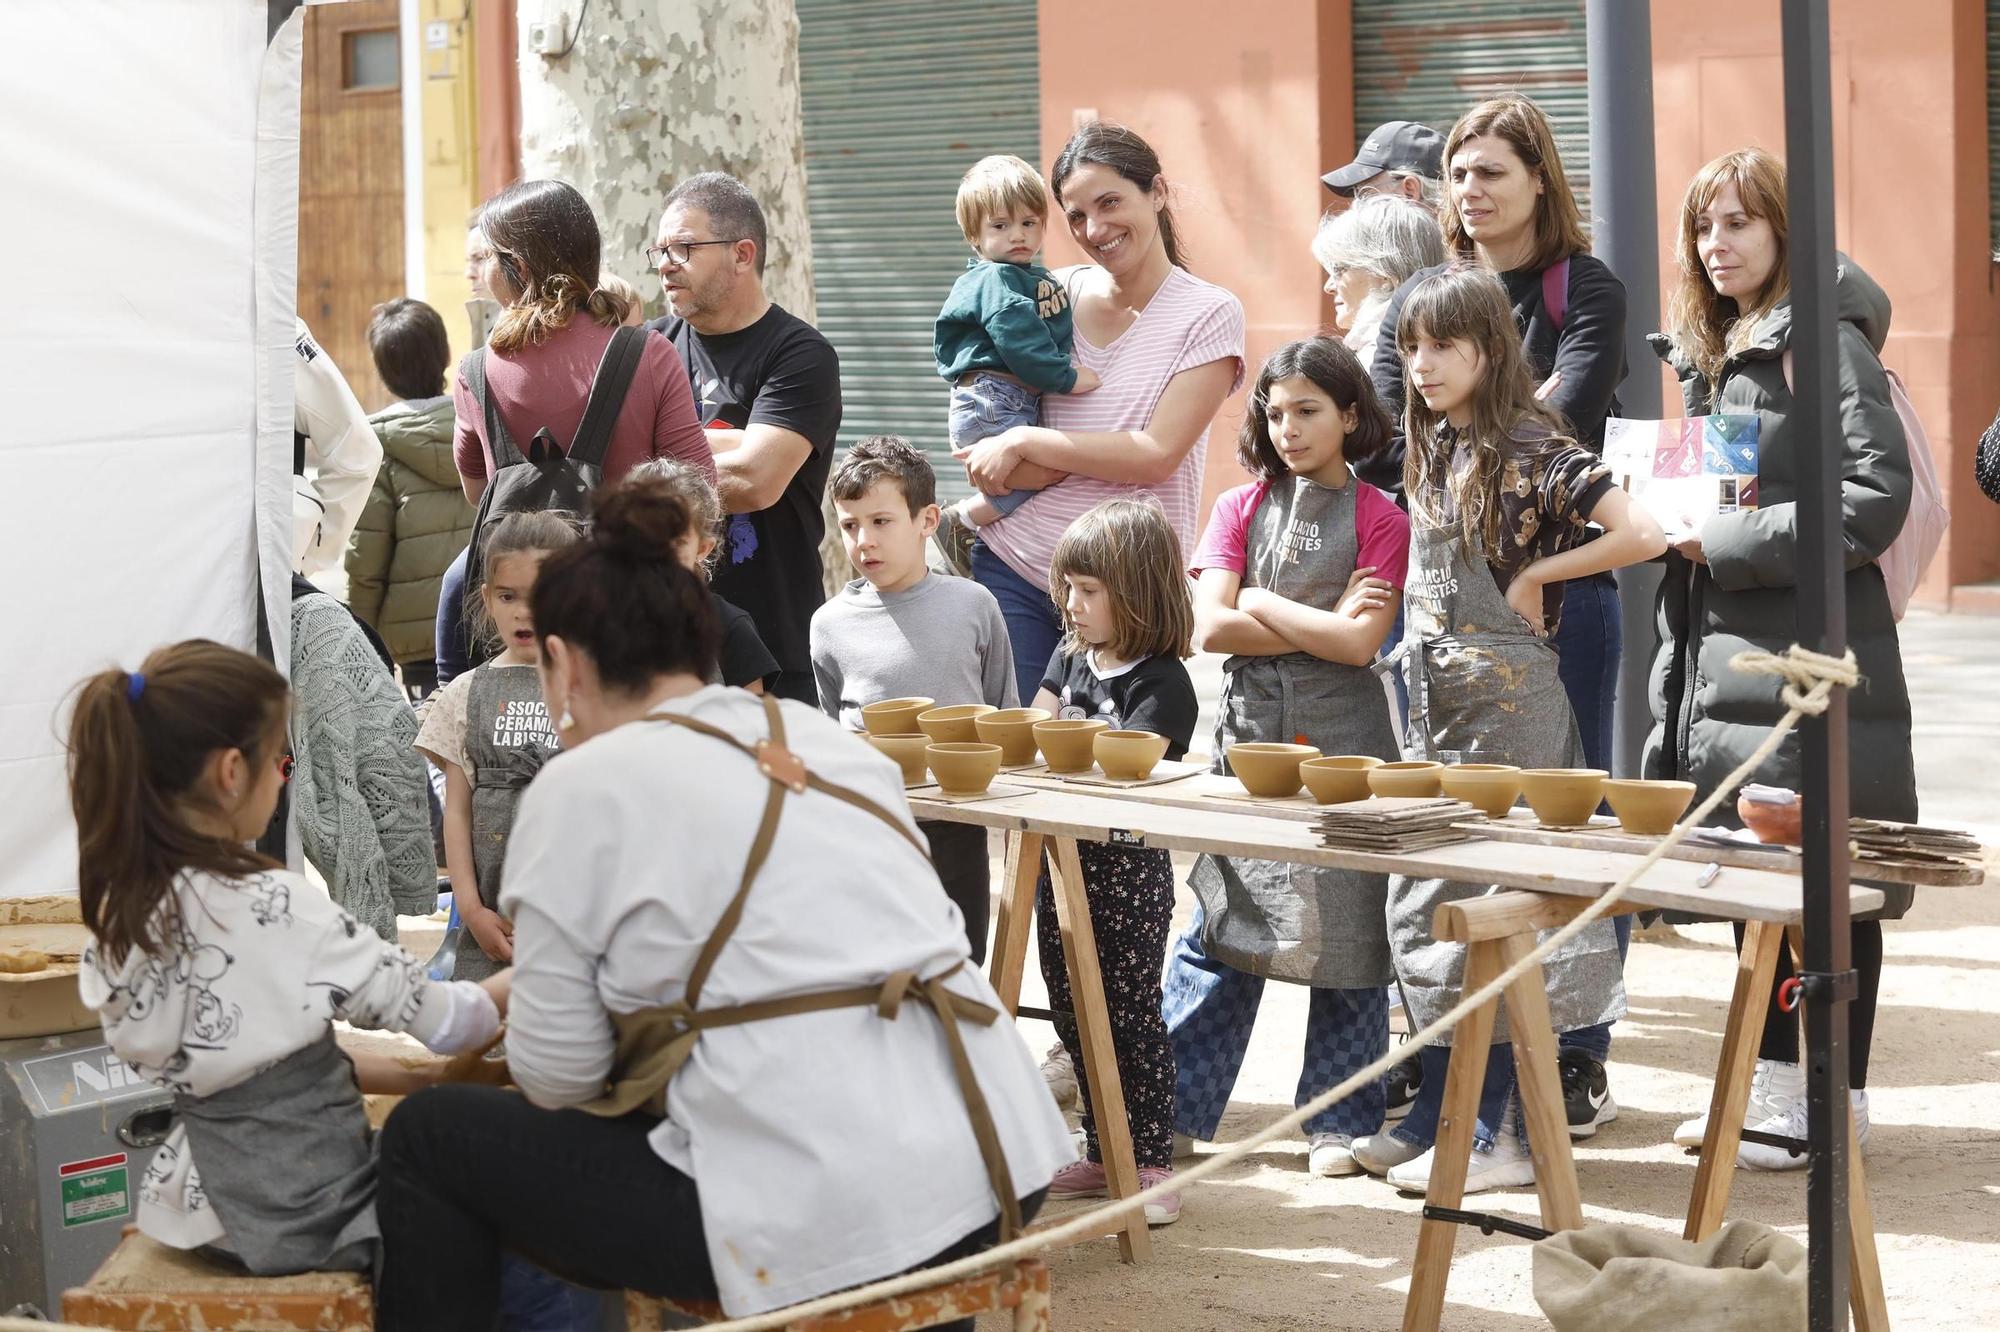 L'artesania aterra a la Bisbal d'Empordà amb la Fira Artesana